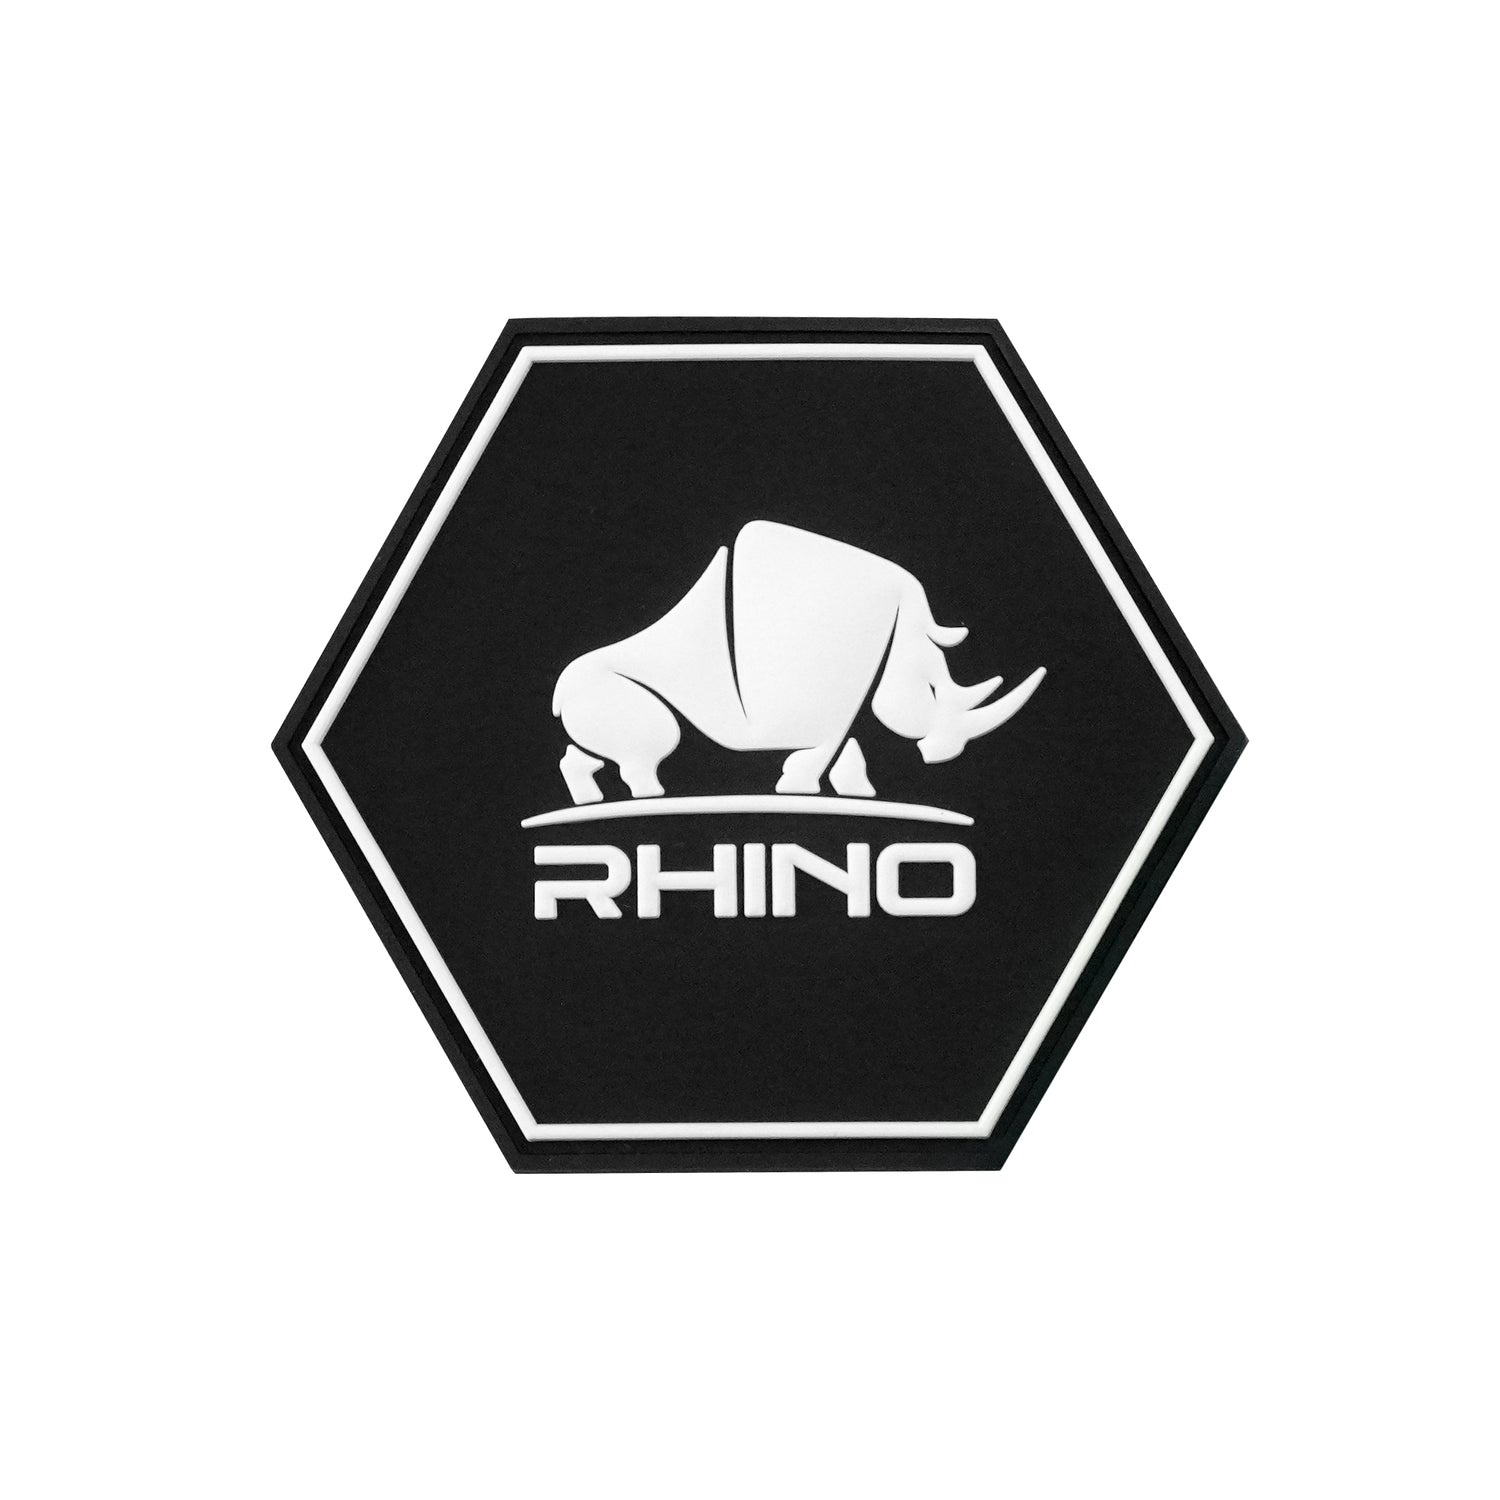 Rhino - Hexagon Rubber Patch